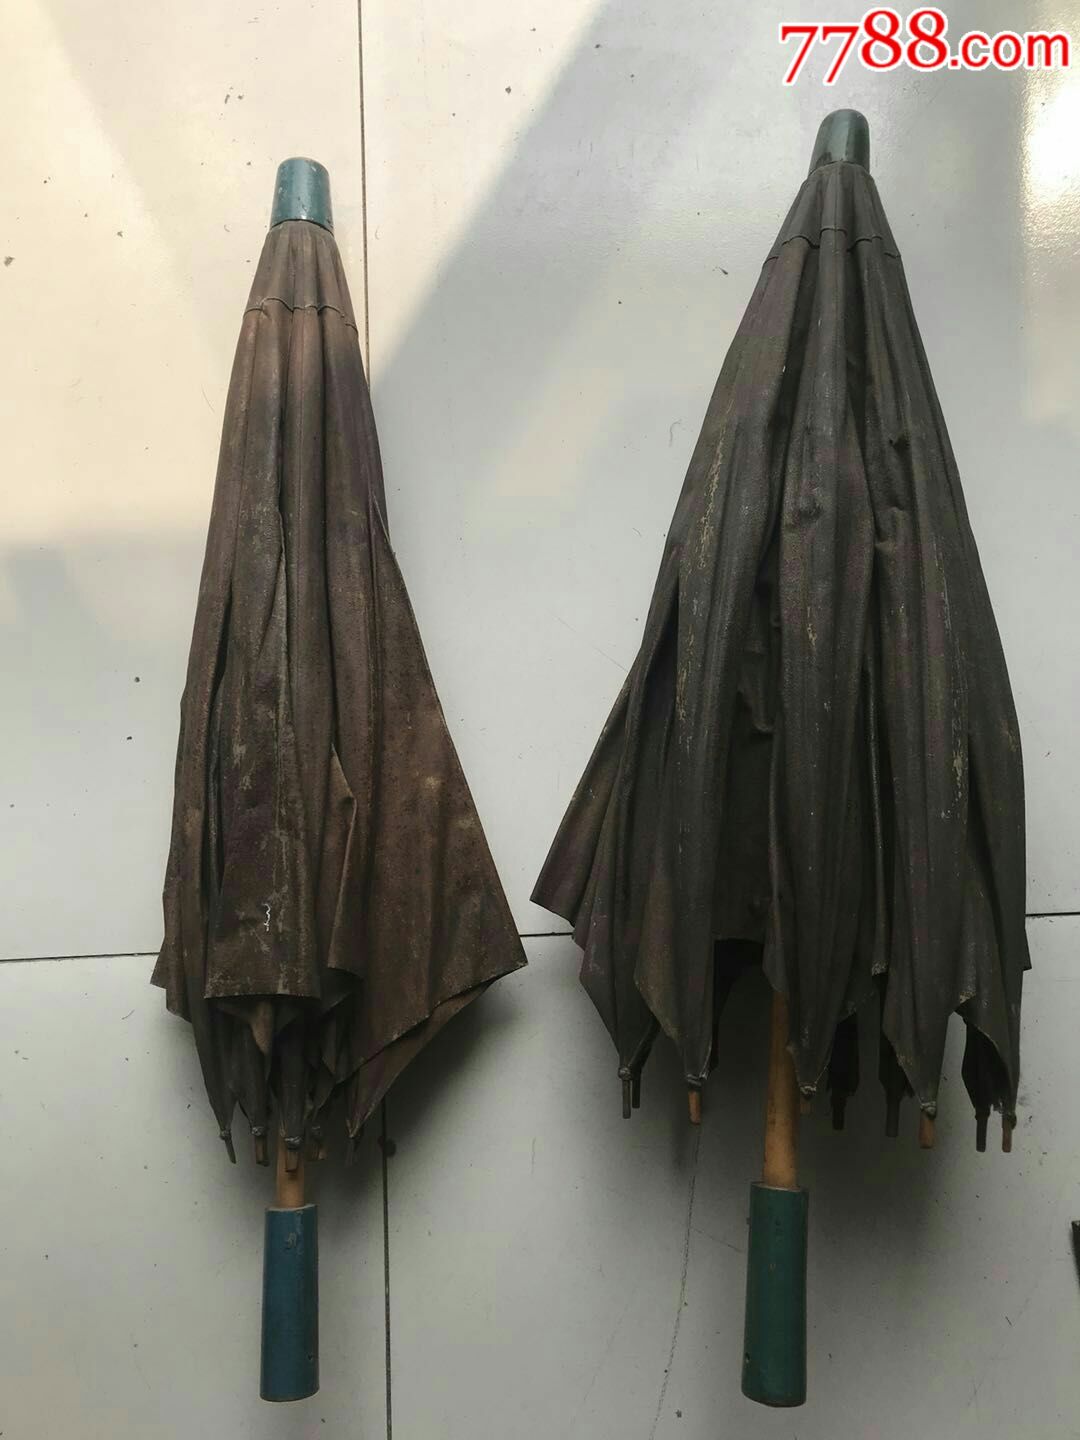 民国时期的老油布雨伞,完整正常使用!